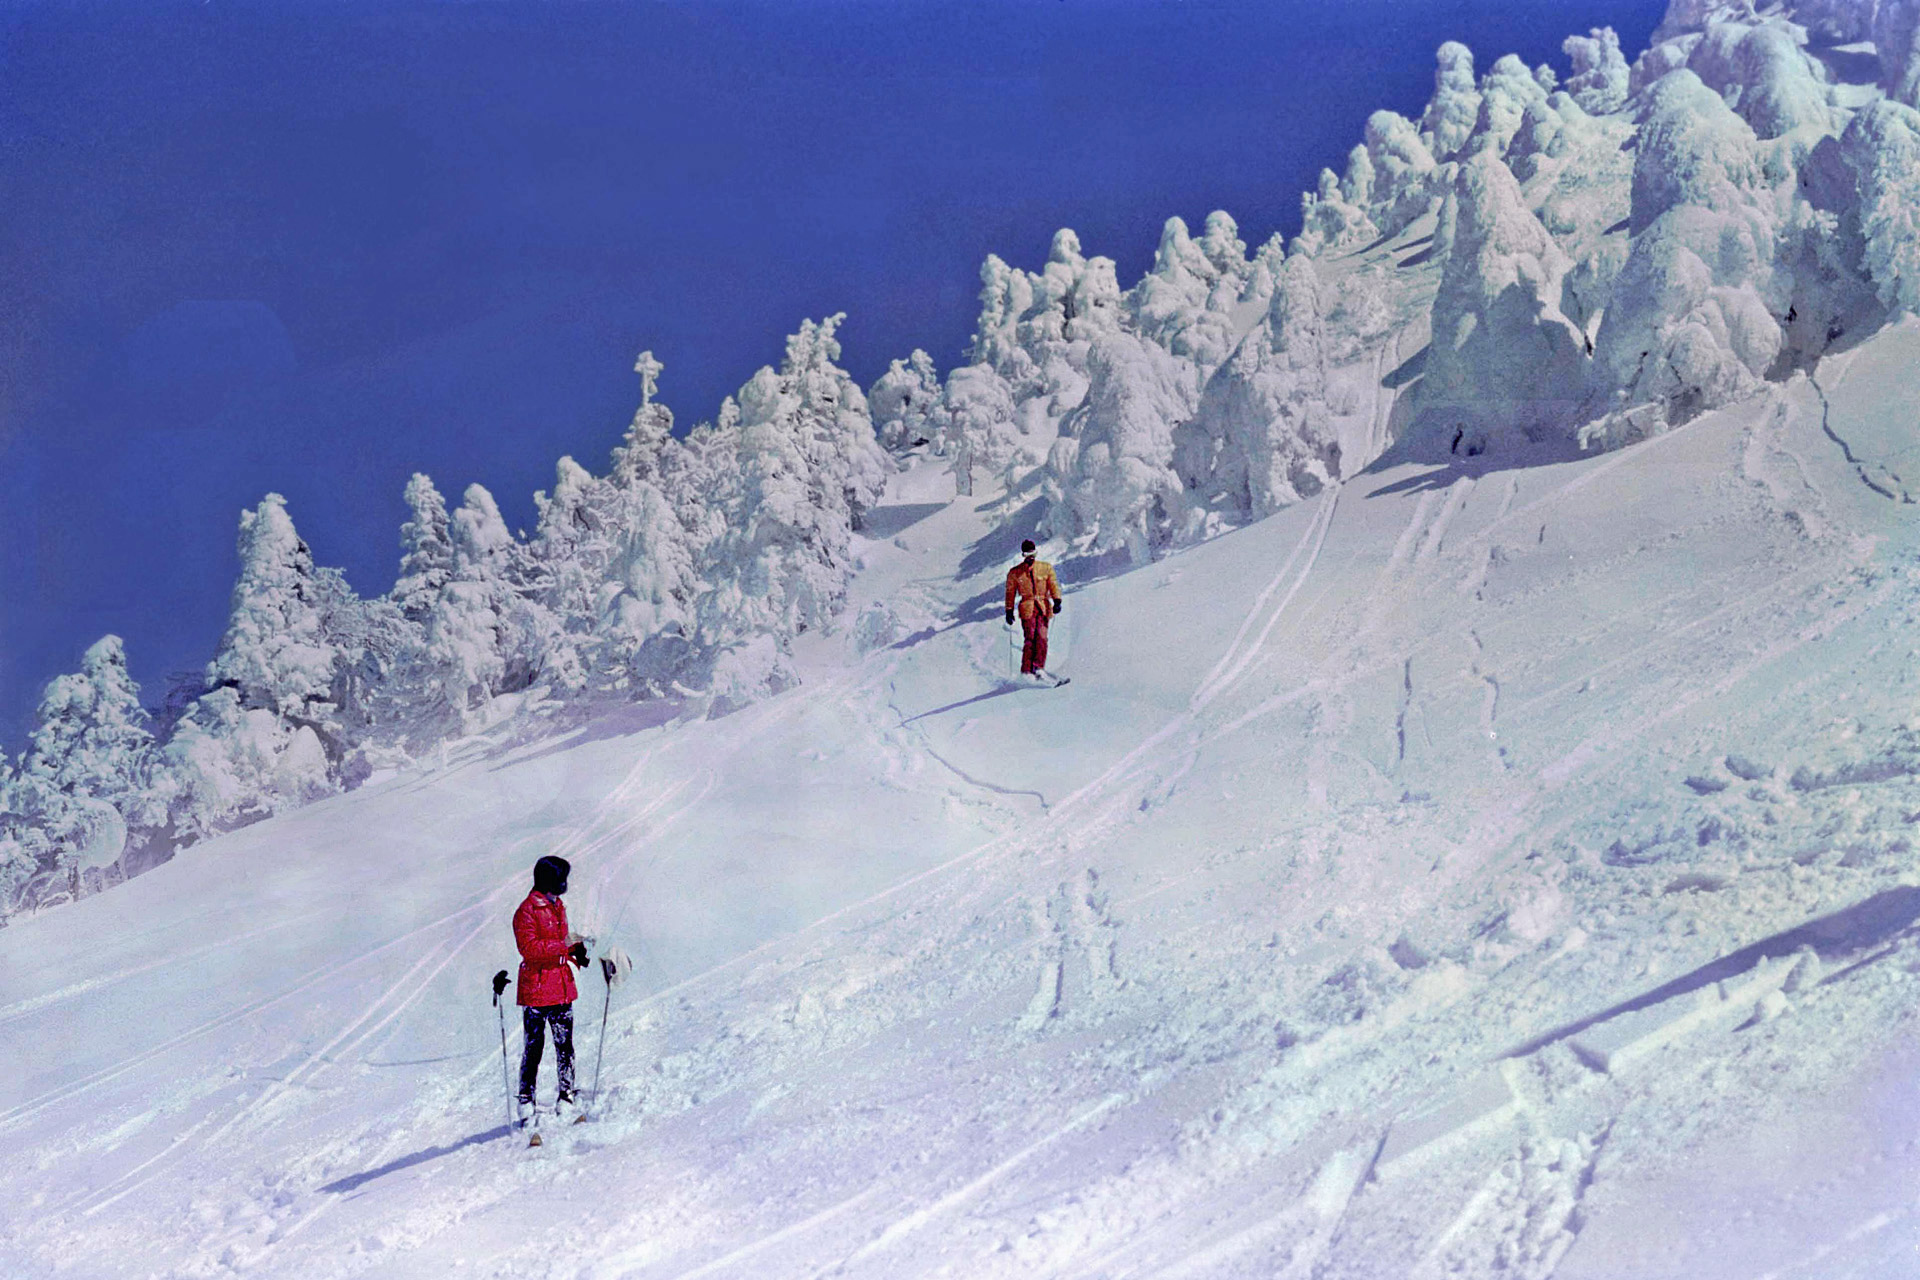 日本の風景 樹氷林を抜けて一息 1975年 壁紙19x1280 壁紙館